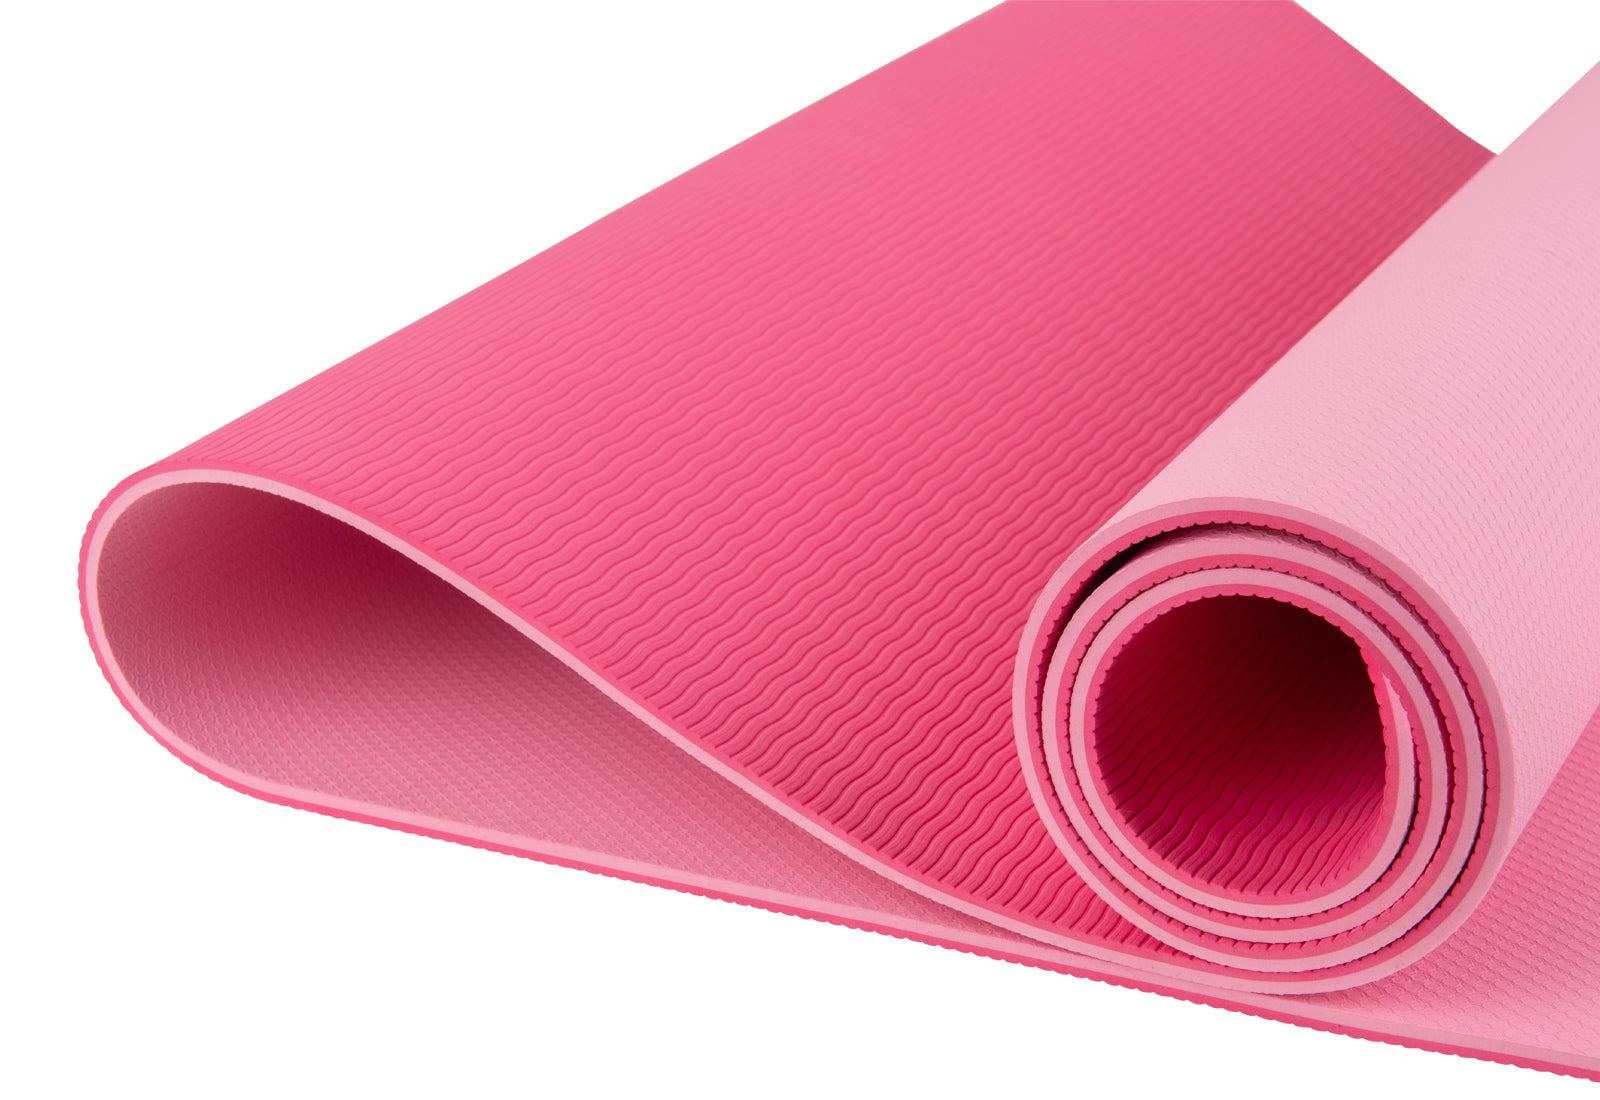 VAI21 non slip yoga mat in pastel pink